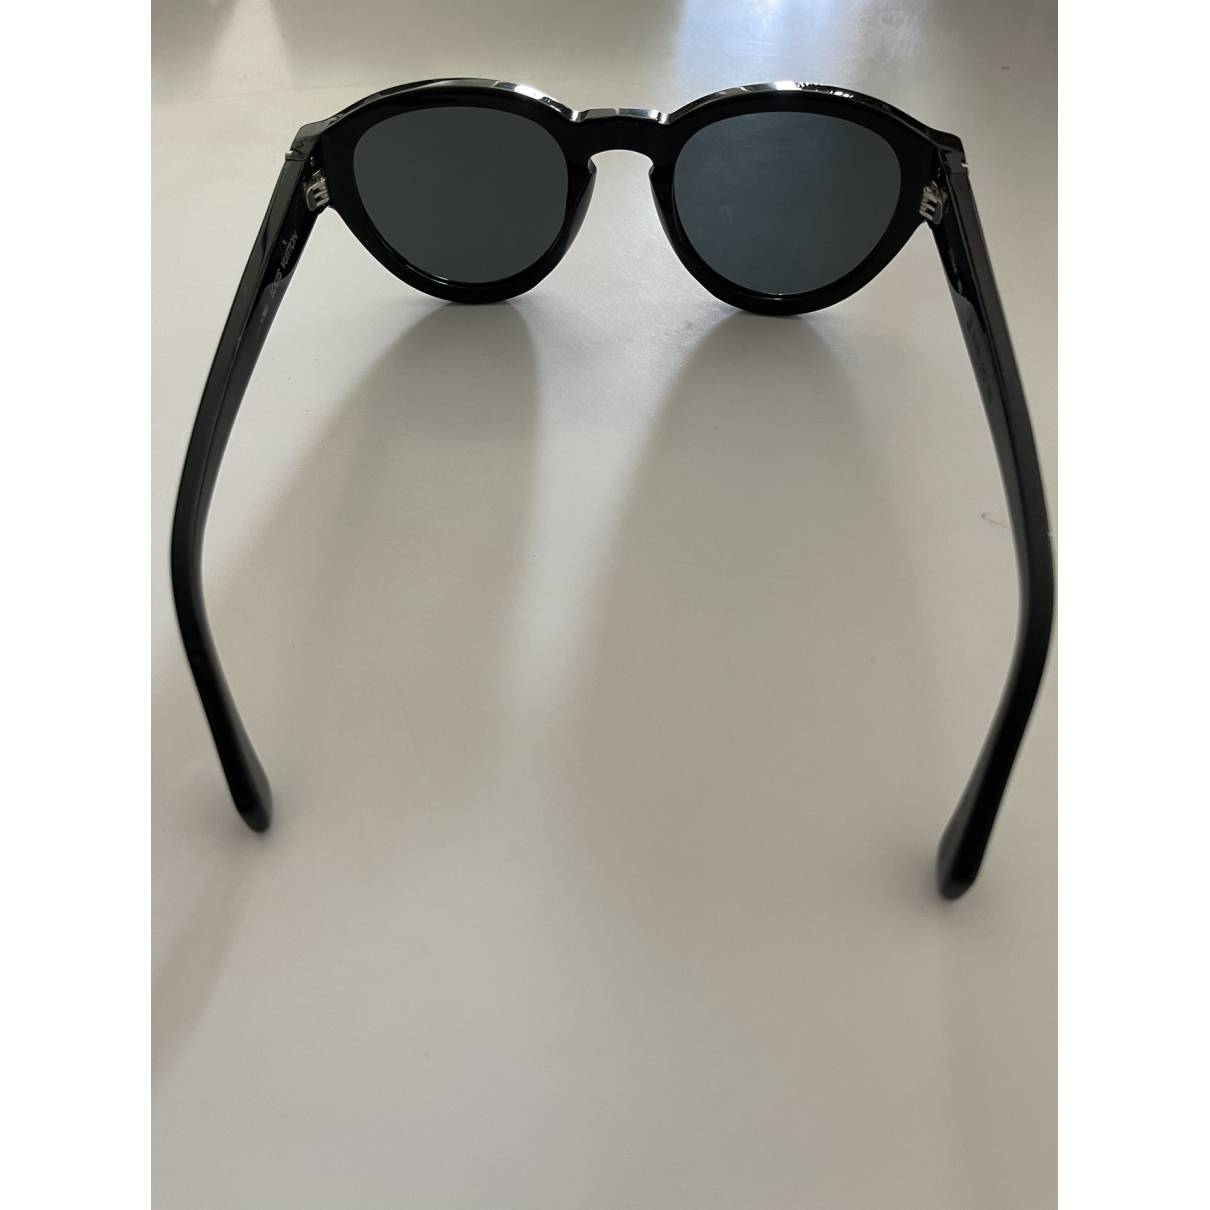 Sunglasses Louis Vuitton Black in Plastic - 22680688